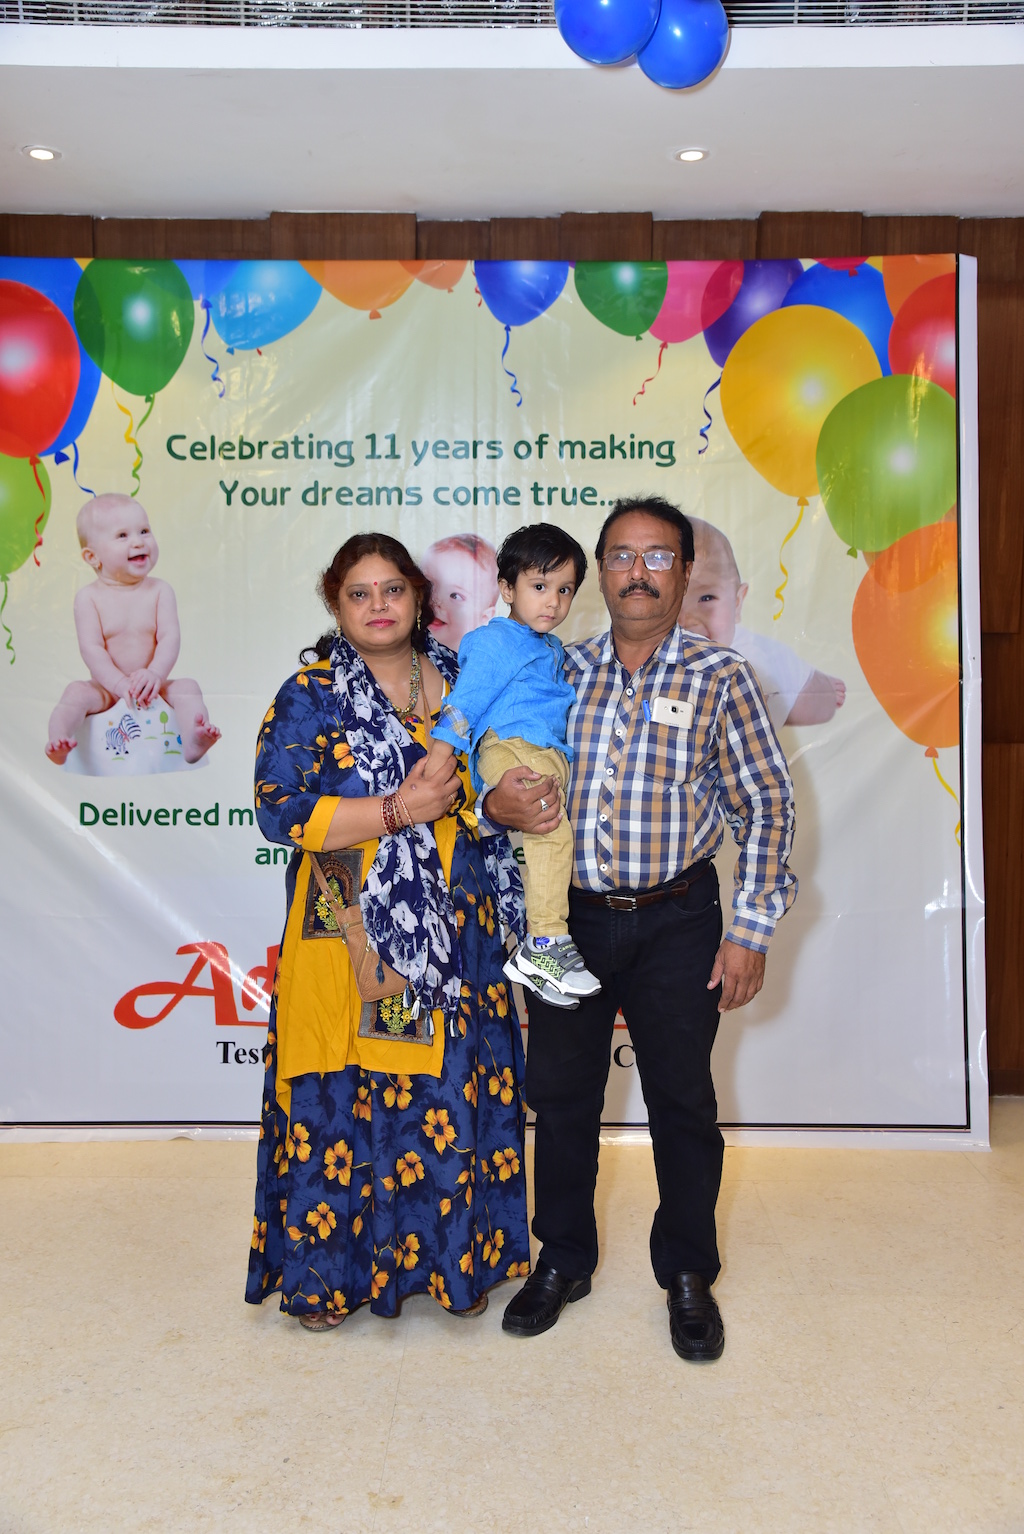 Best IVF Centre in Noida, Test Tube Baby Center in Noida, Infertility Treatment in Noida, IVF Centre in Noida, Fertility Centre in Noida, IVF Doctor in Noida, IVF Fertility Centre in Noida